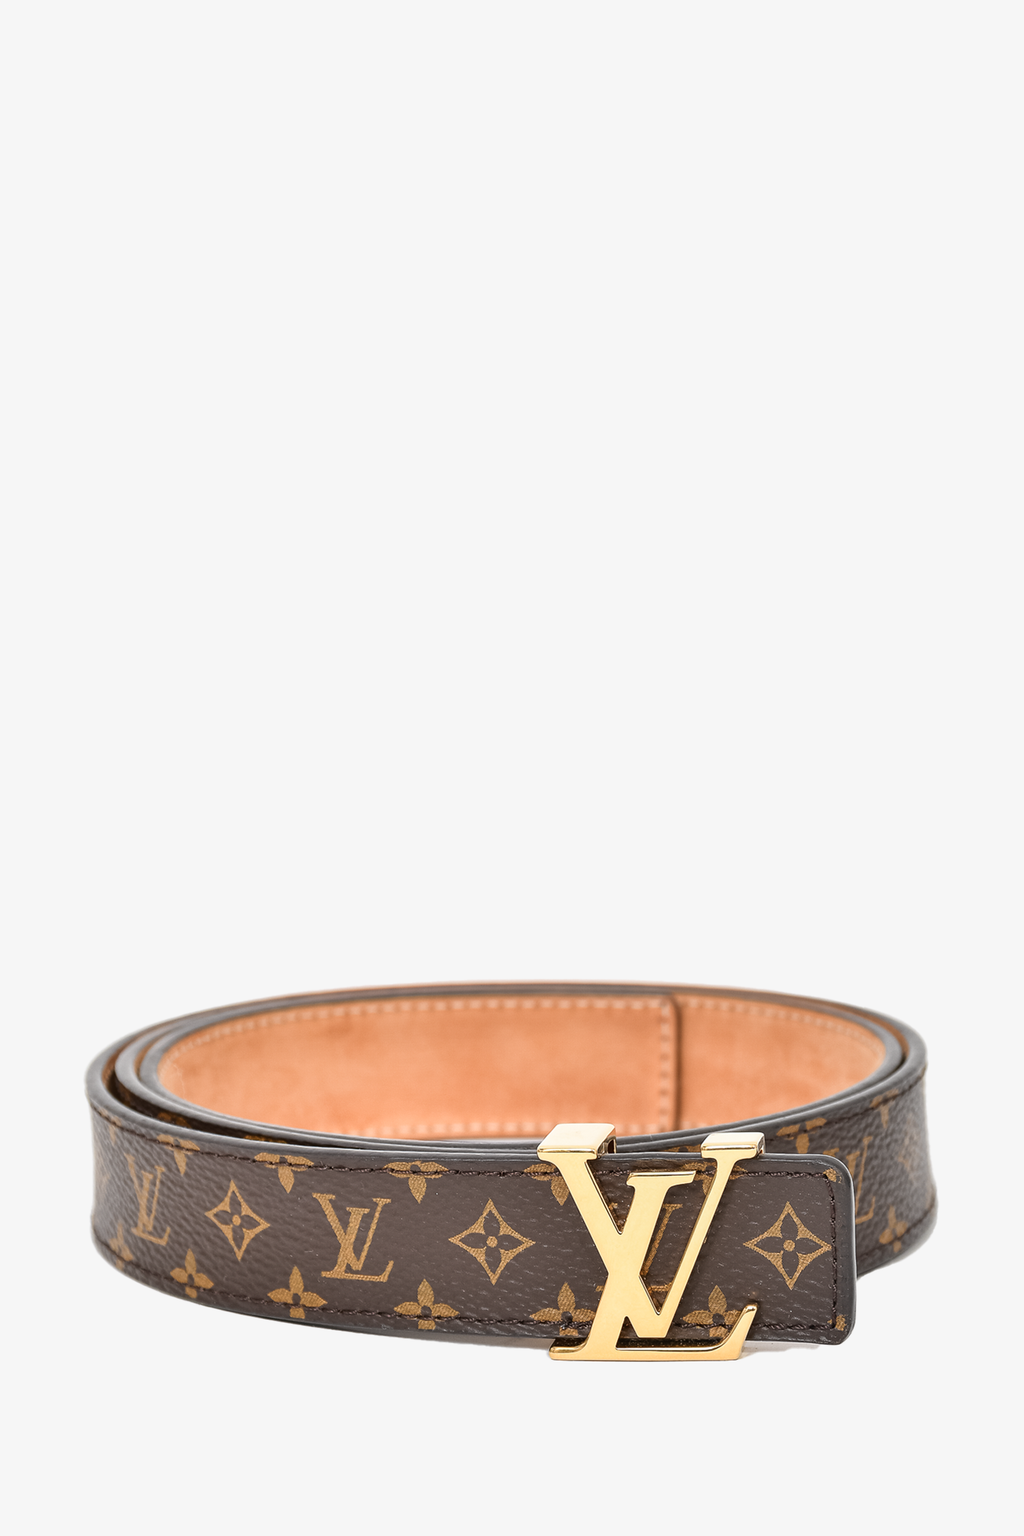 Louis Vuitton Size 80 Belt Monogram Canvas Black GHW